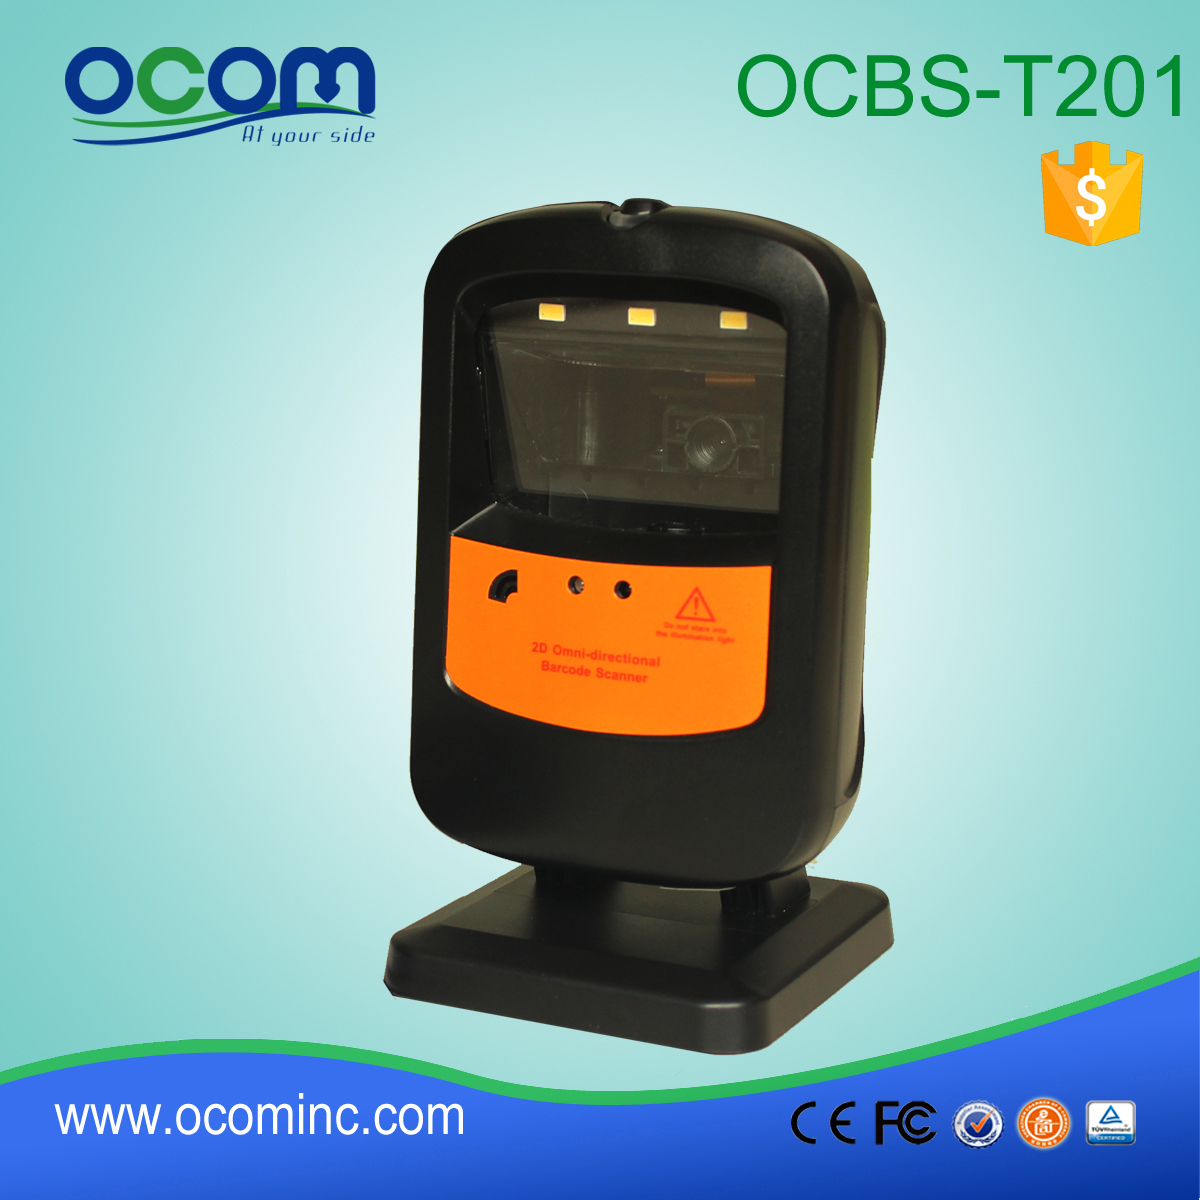 OCBS-T201: dookólna dostawcy czytnik kodów kreskowych, moduł czytnika kodów kreskowych